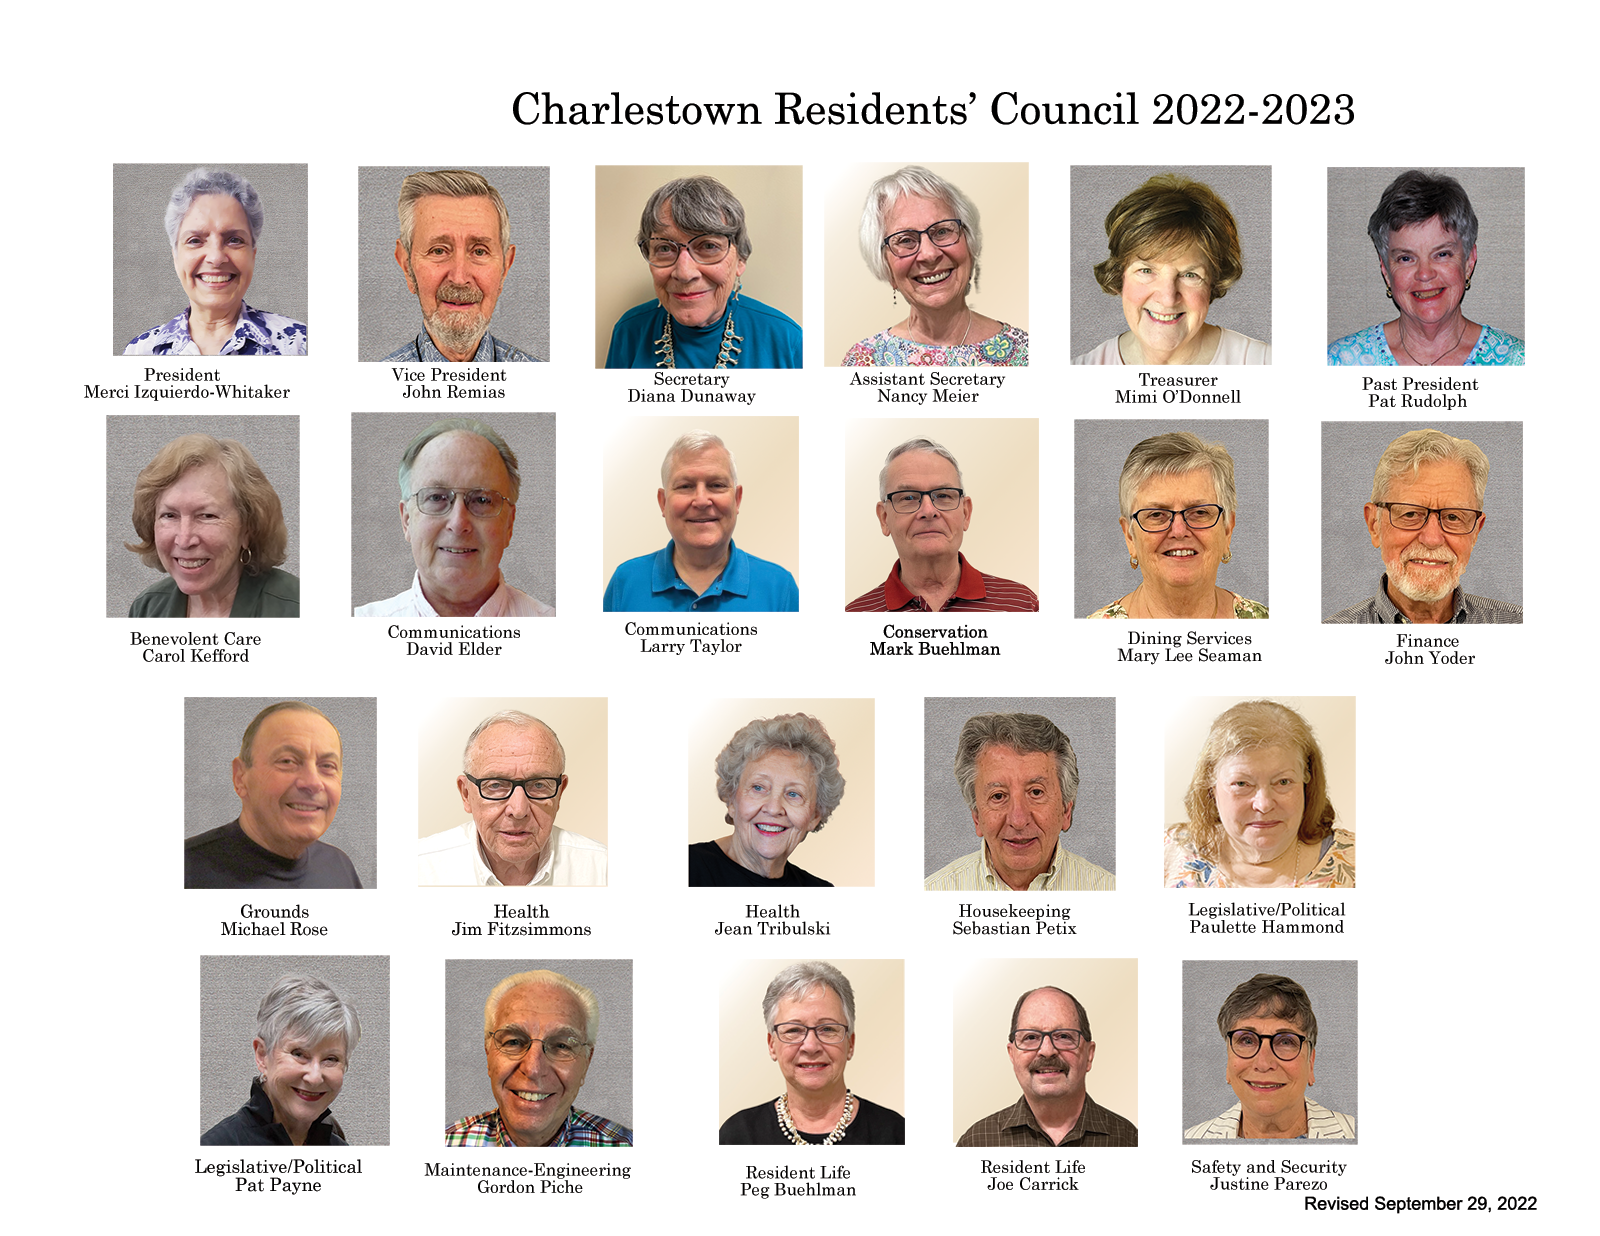 Council 2022-2023